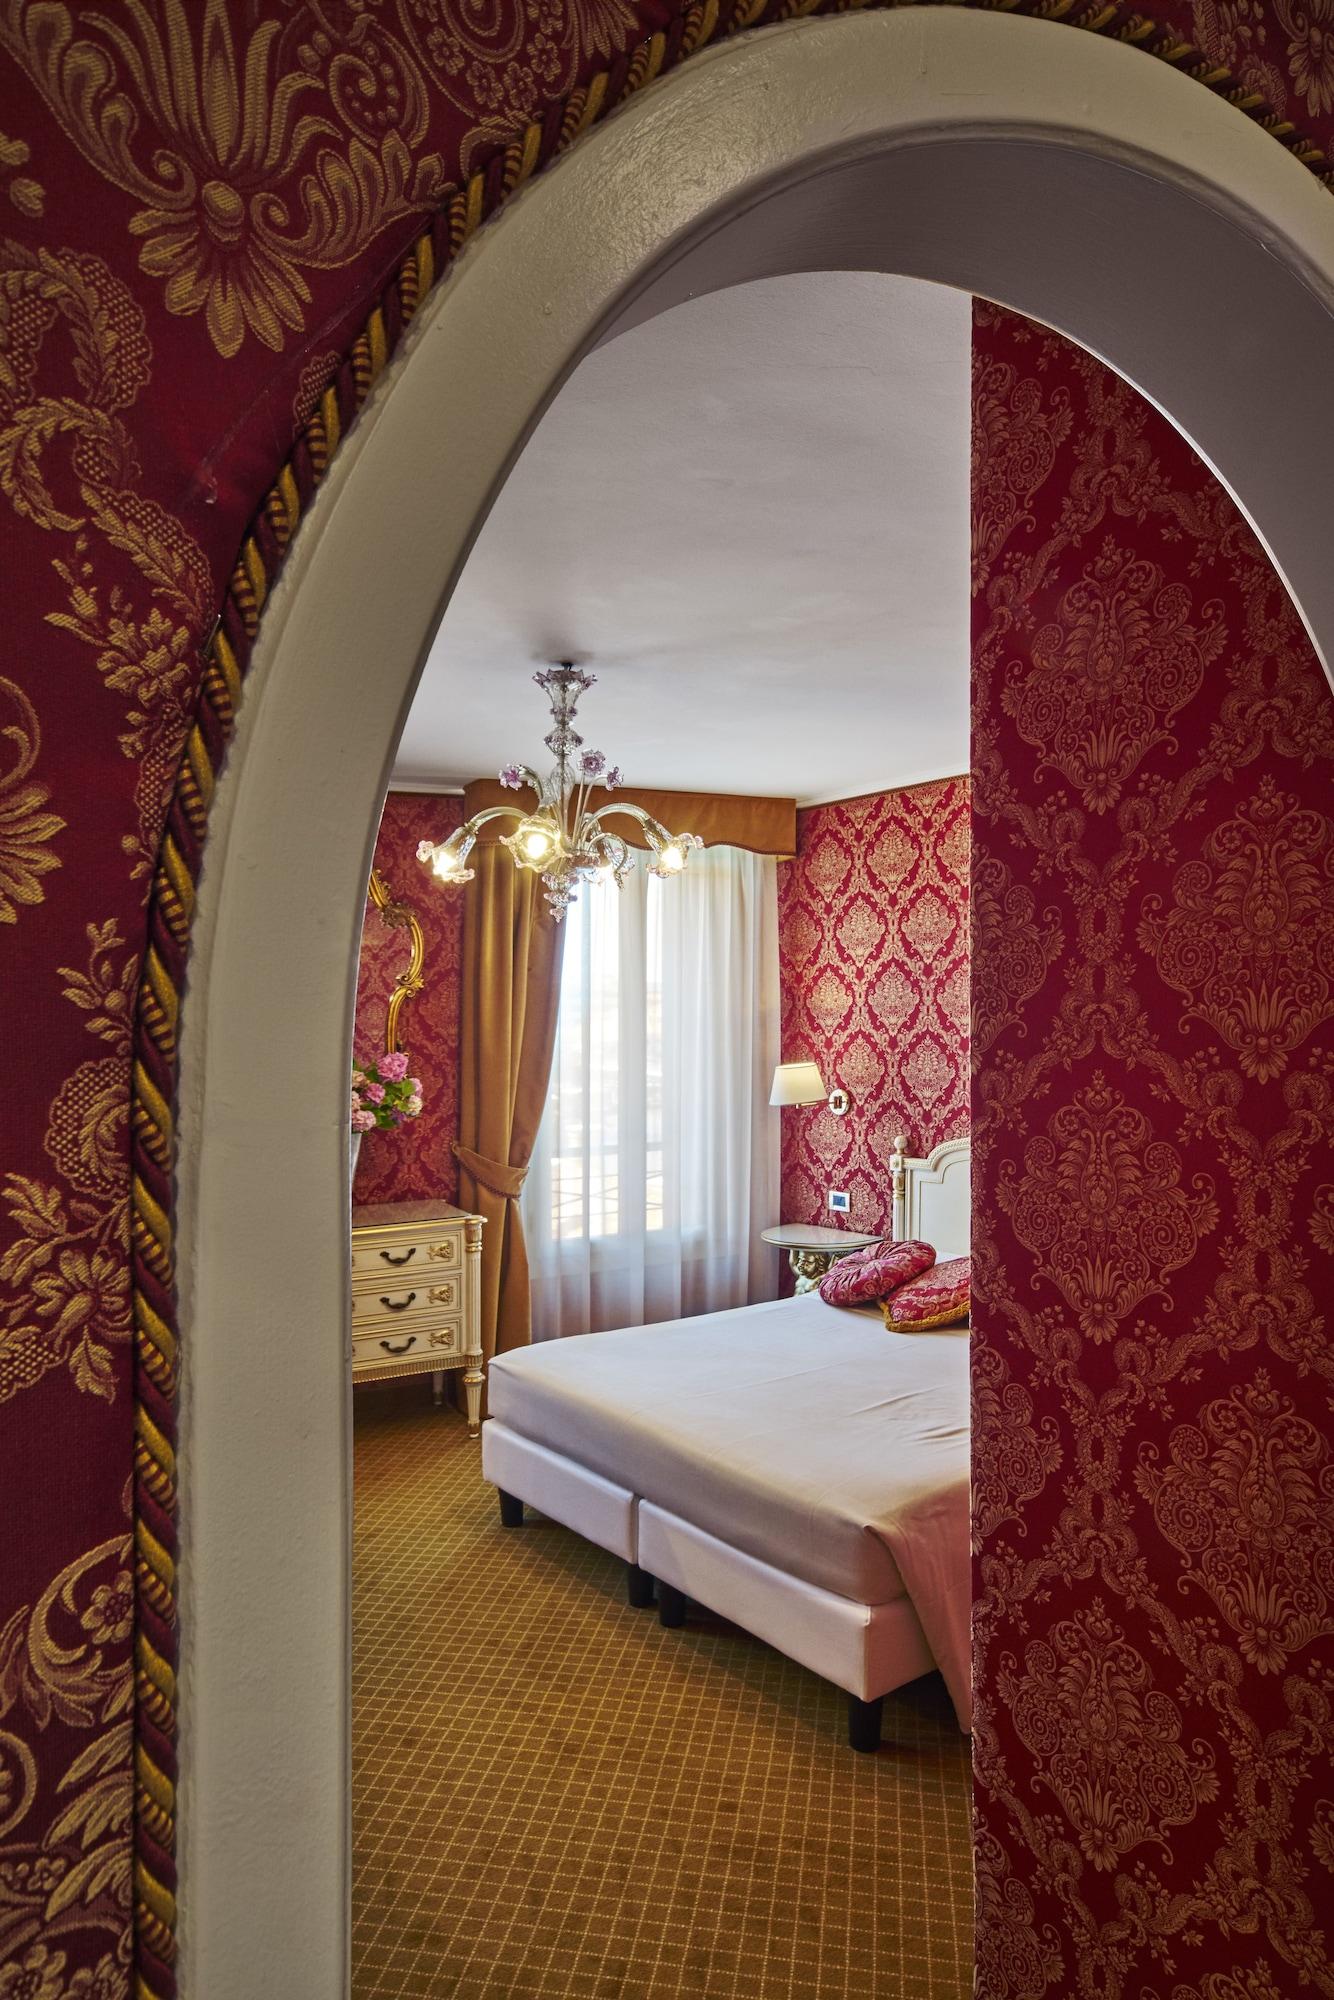 ホテル ガーデナ ヴェネツィア エクステリア 写真